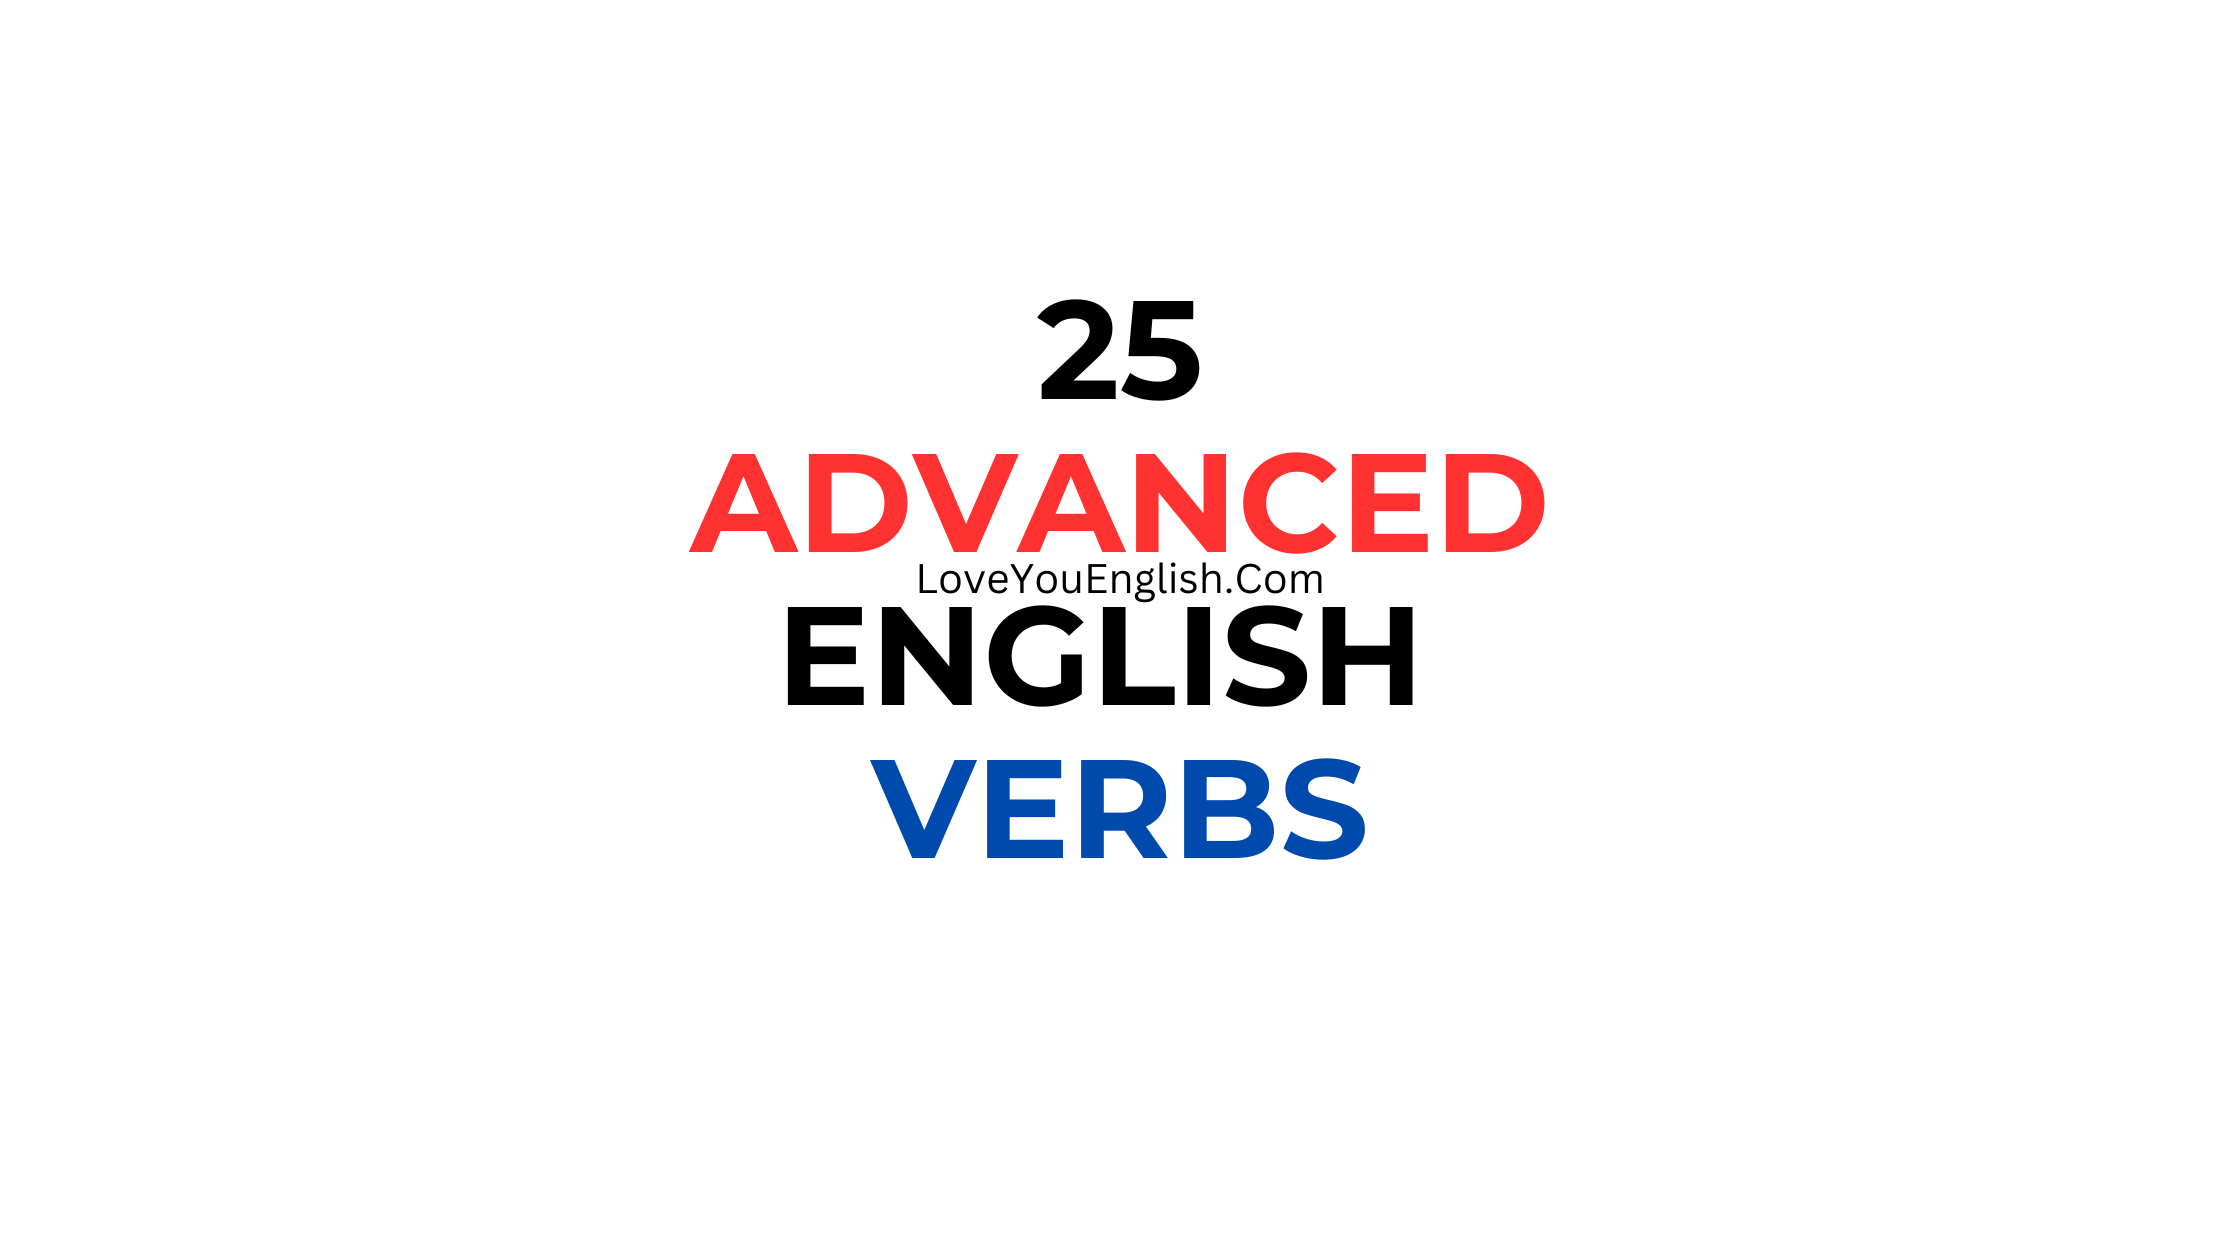 25 Advanced English Verbs